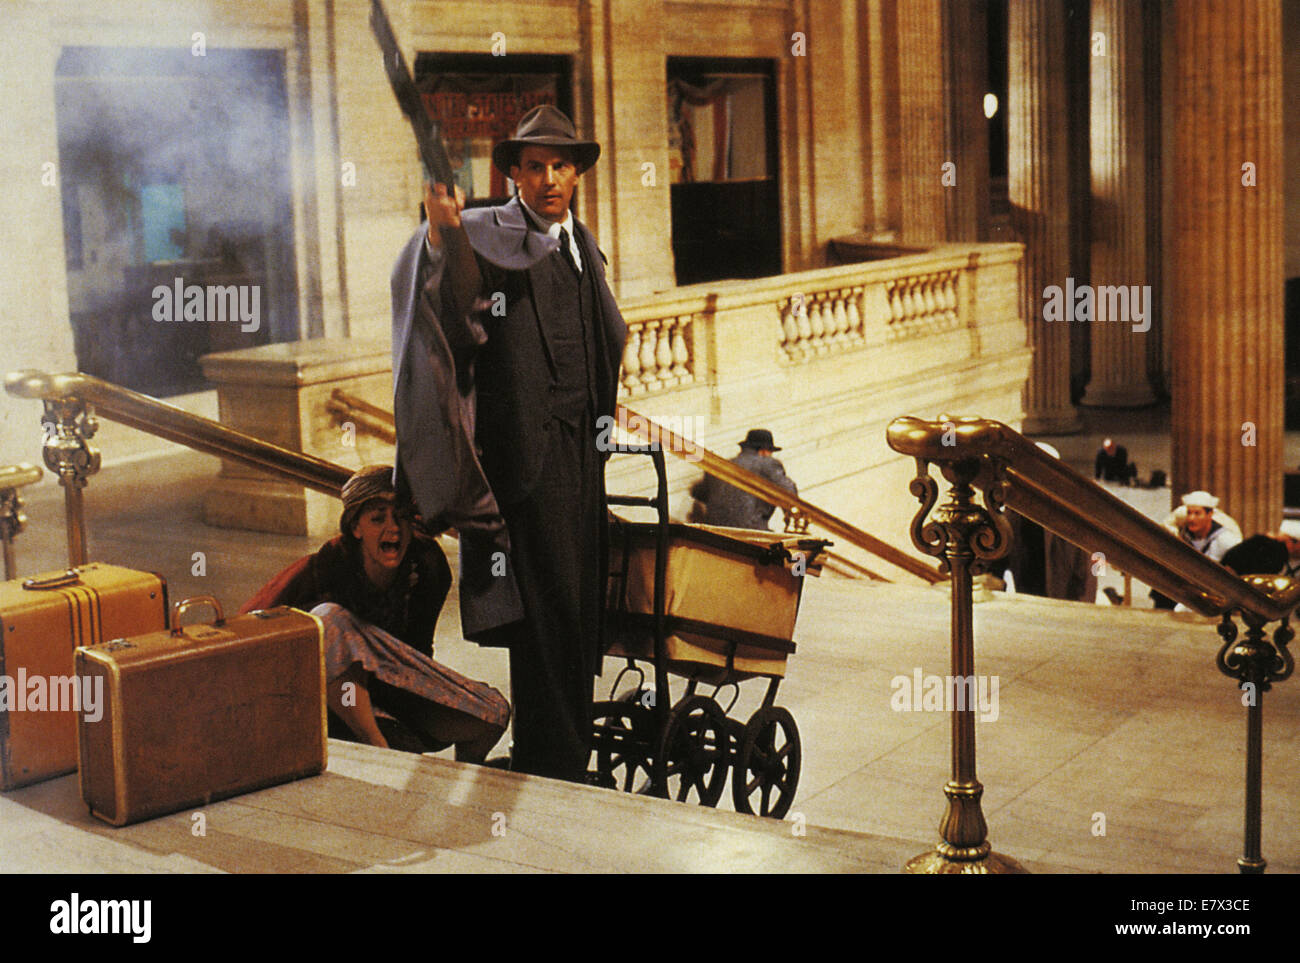 Gli Intoccabili 1987 Paramount film con Kevin Costner Foto Stock